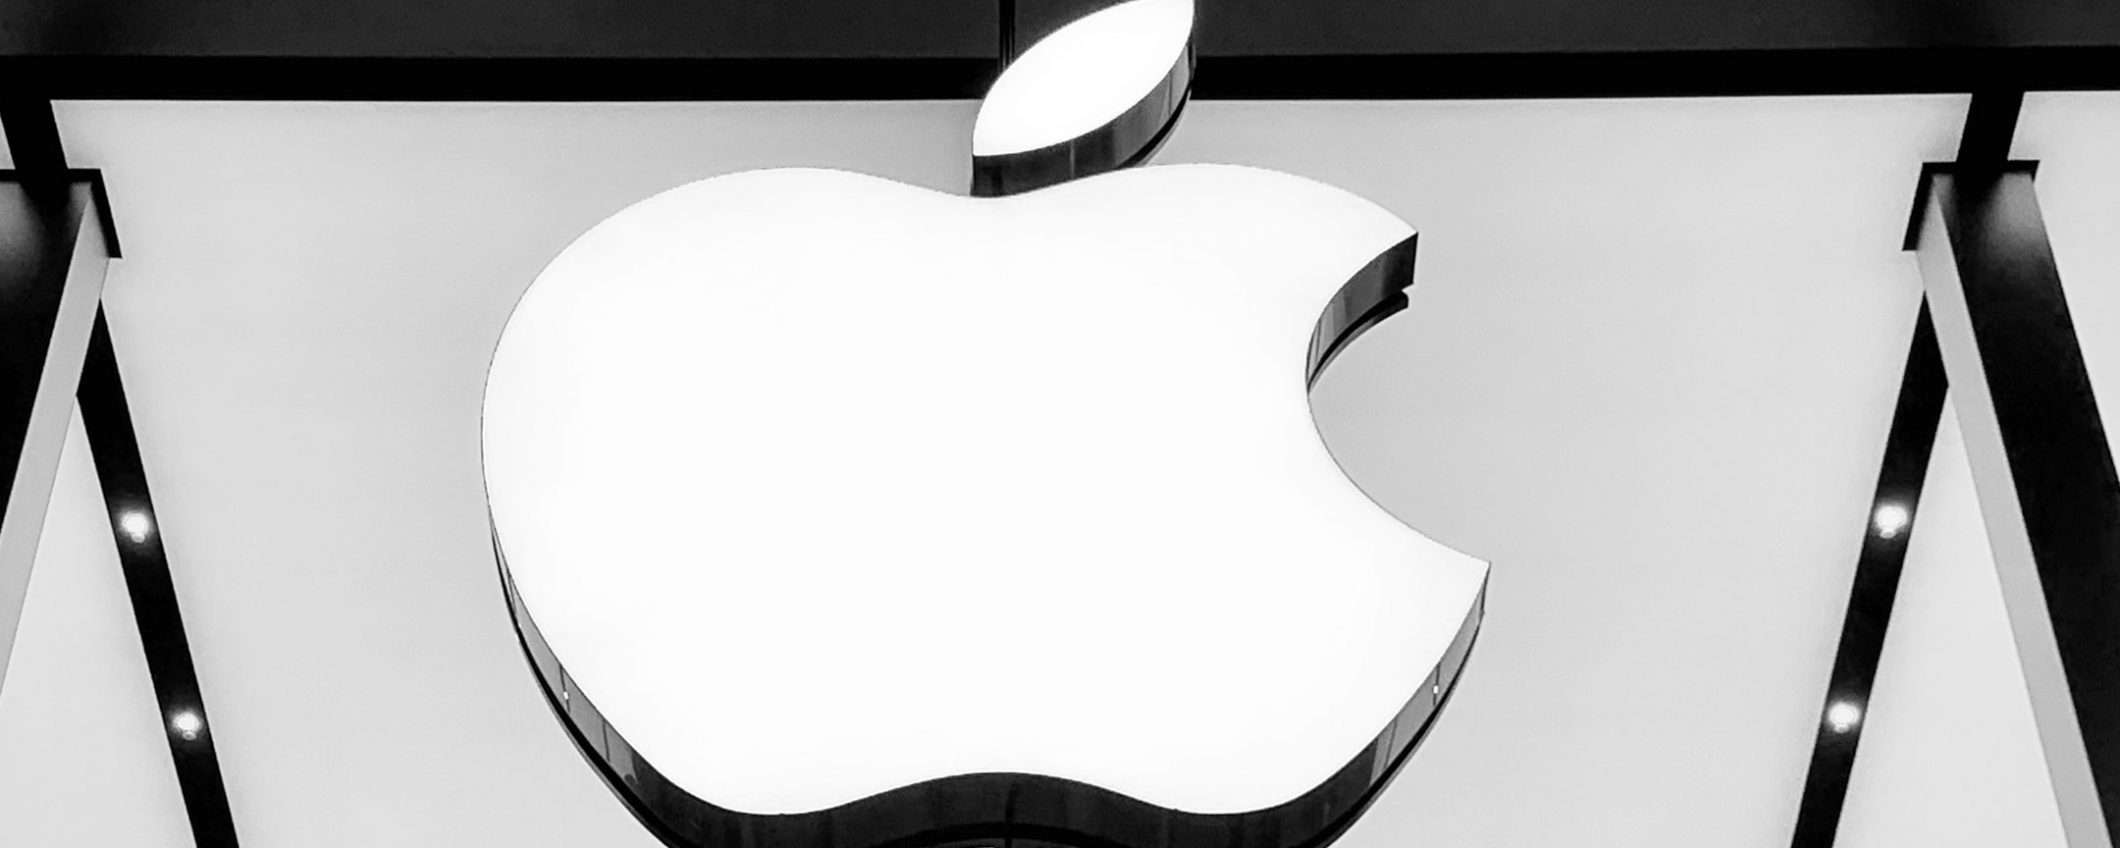 Vilynx è la nuova acquisizione di Apple per l'IA